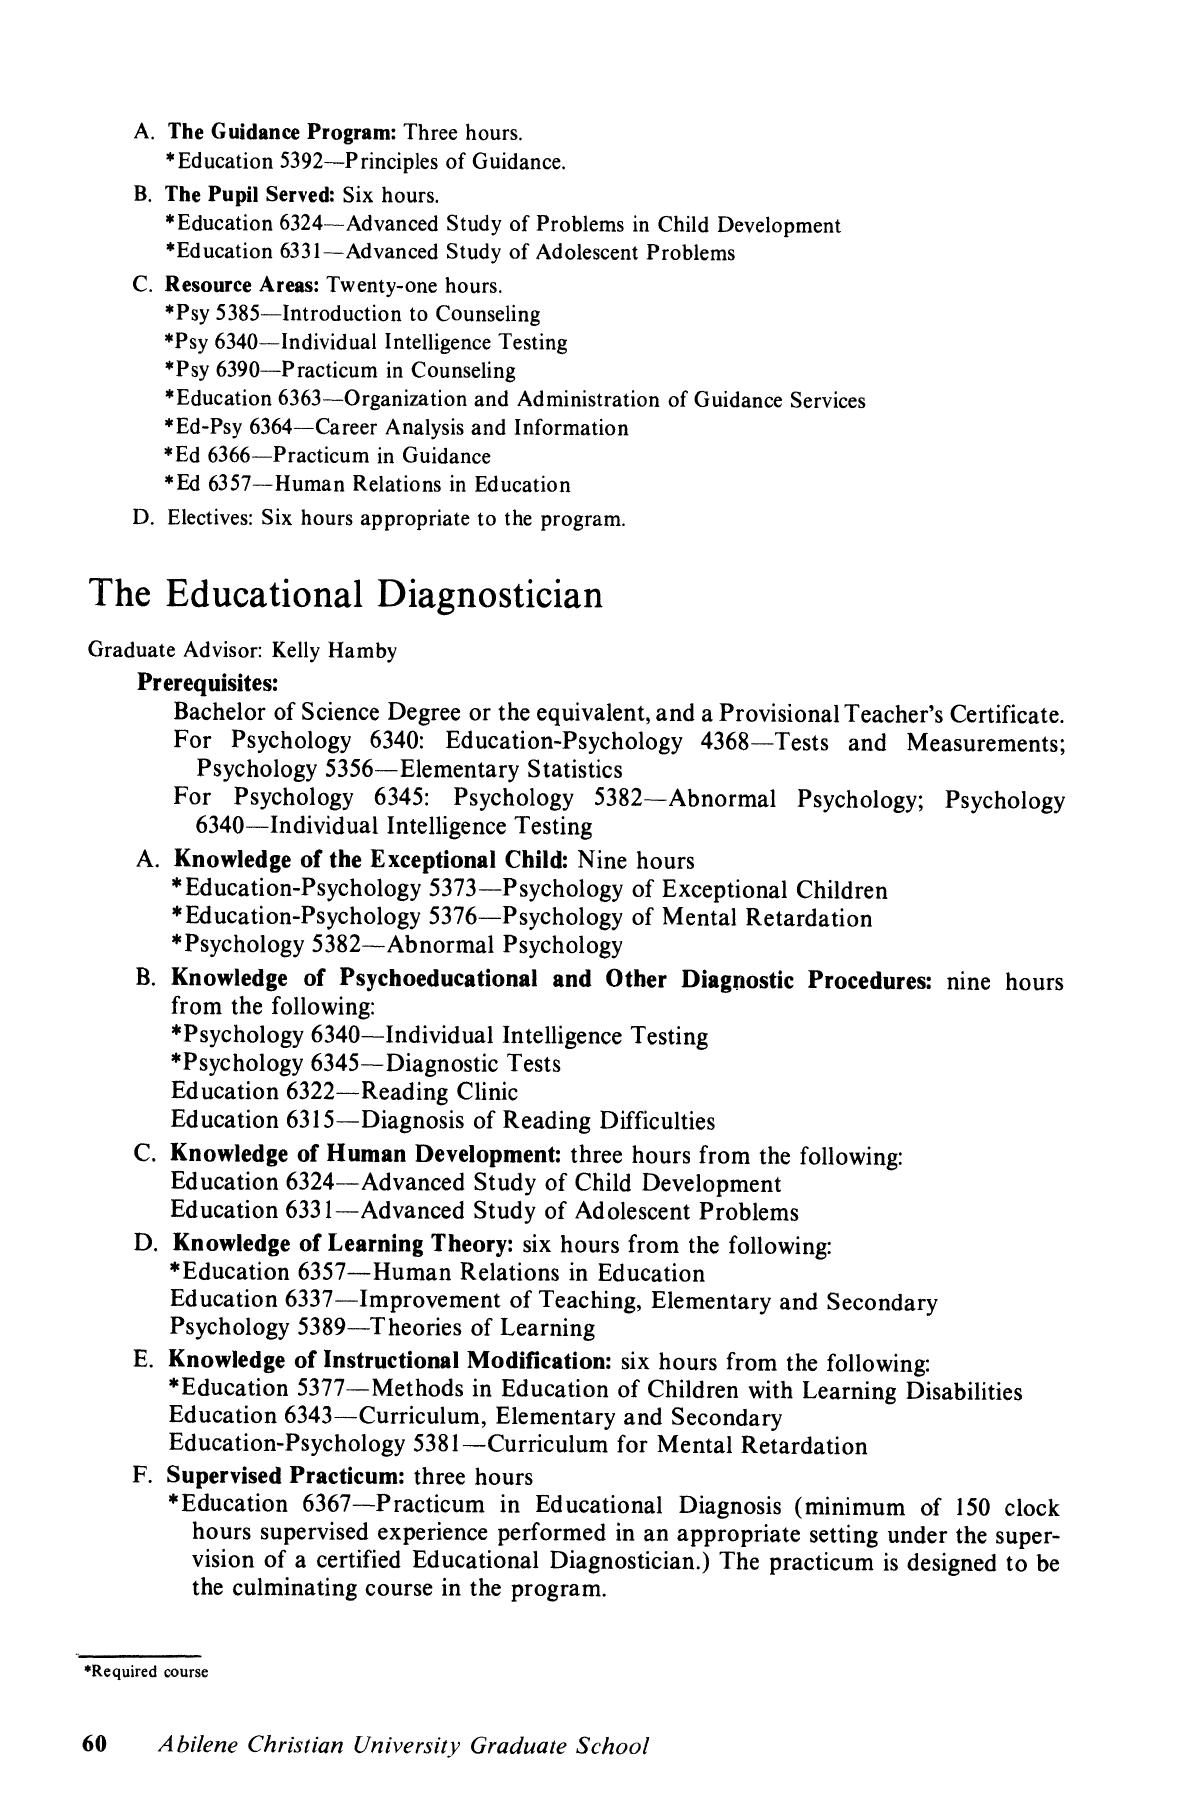 Catalog of Abilene Christian University, 1981-1983
                                                
                                                    60
                                                